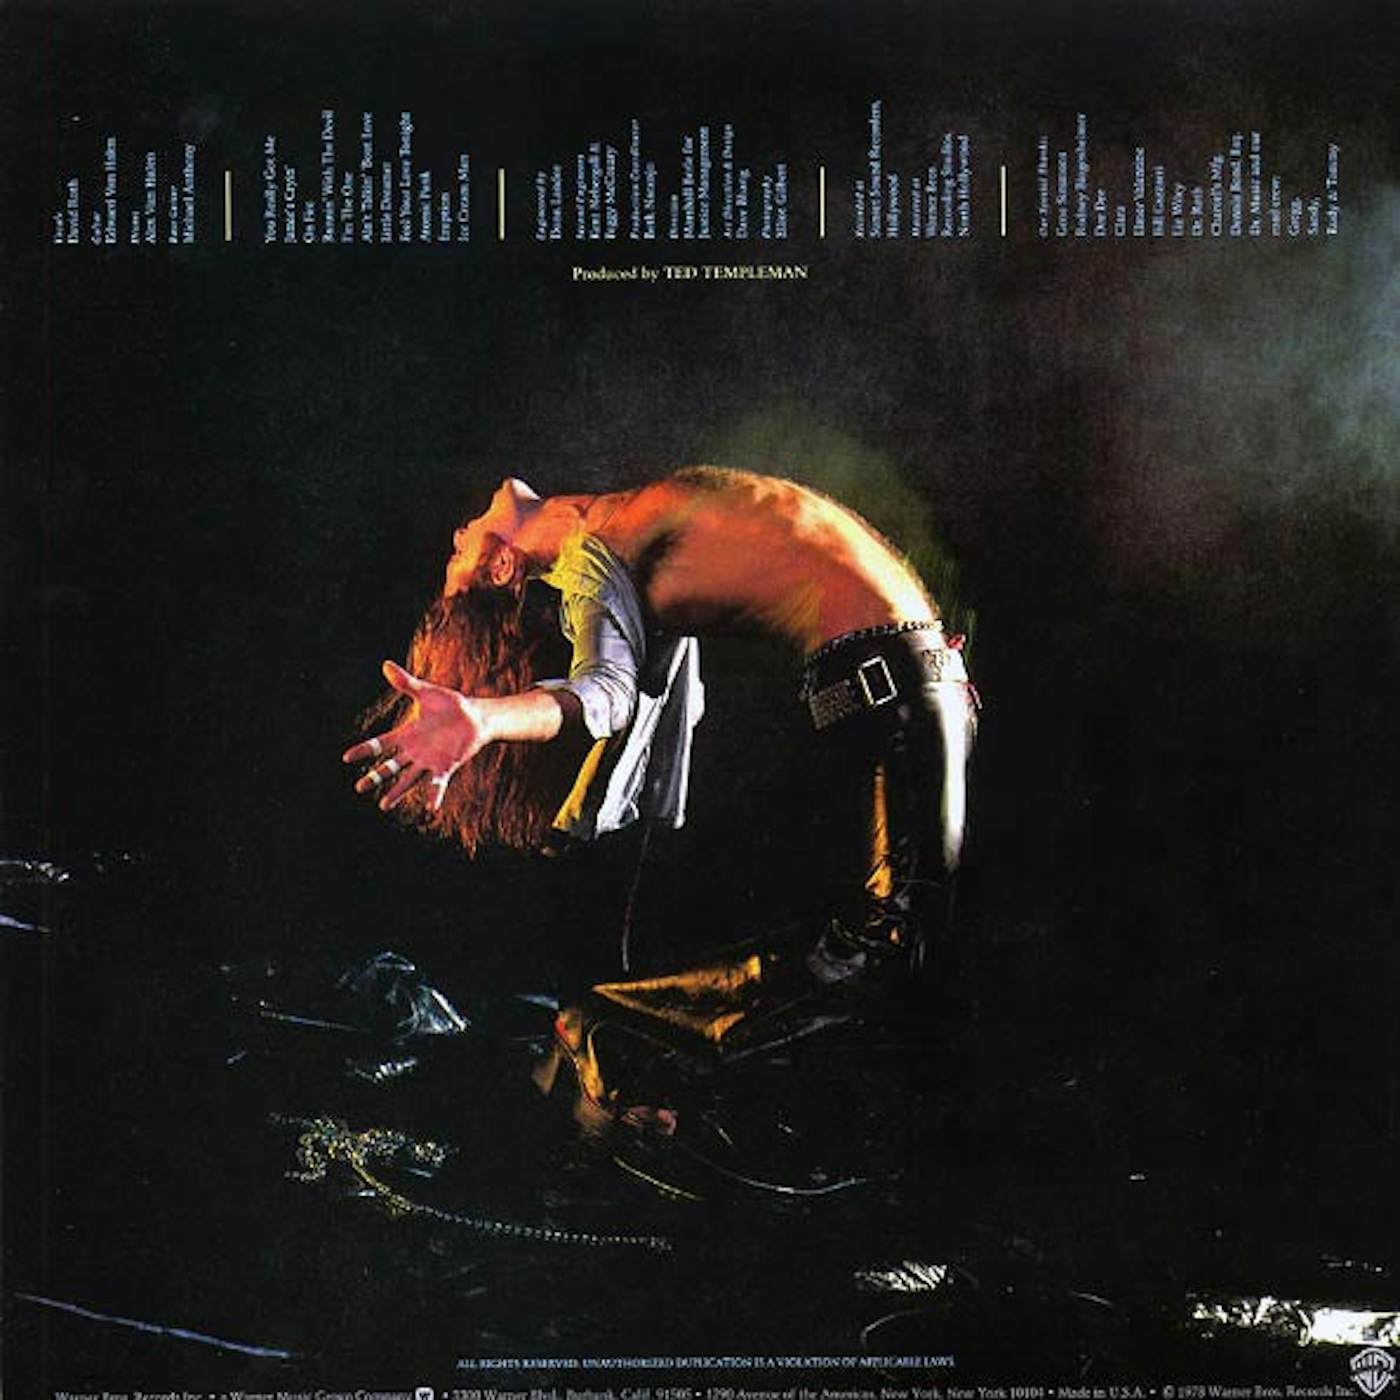 Van Halen LP Vinyl Record - Van Halen